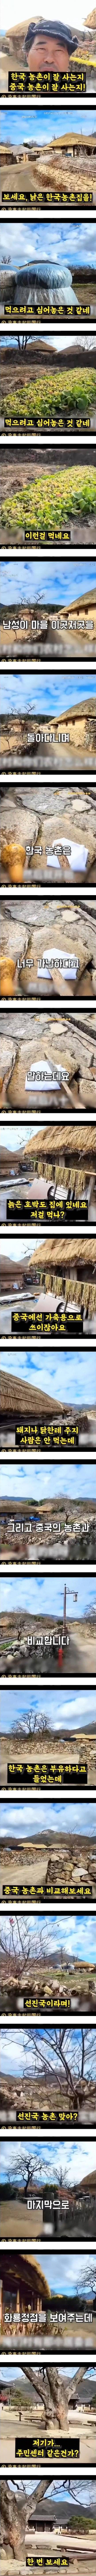 한국 농촌의 실상이라며 중국에 올라온 영상 - 12